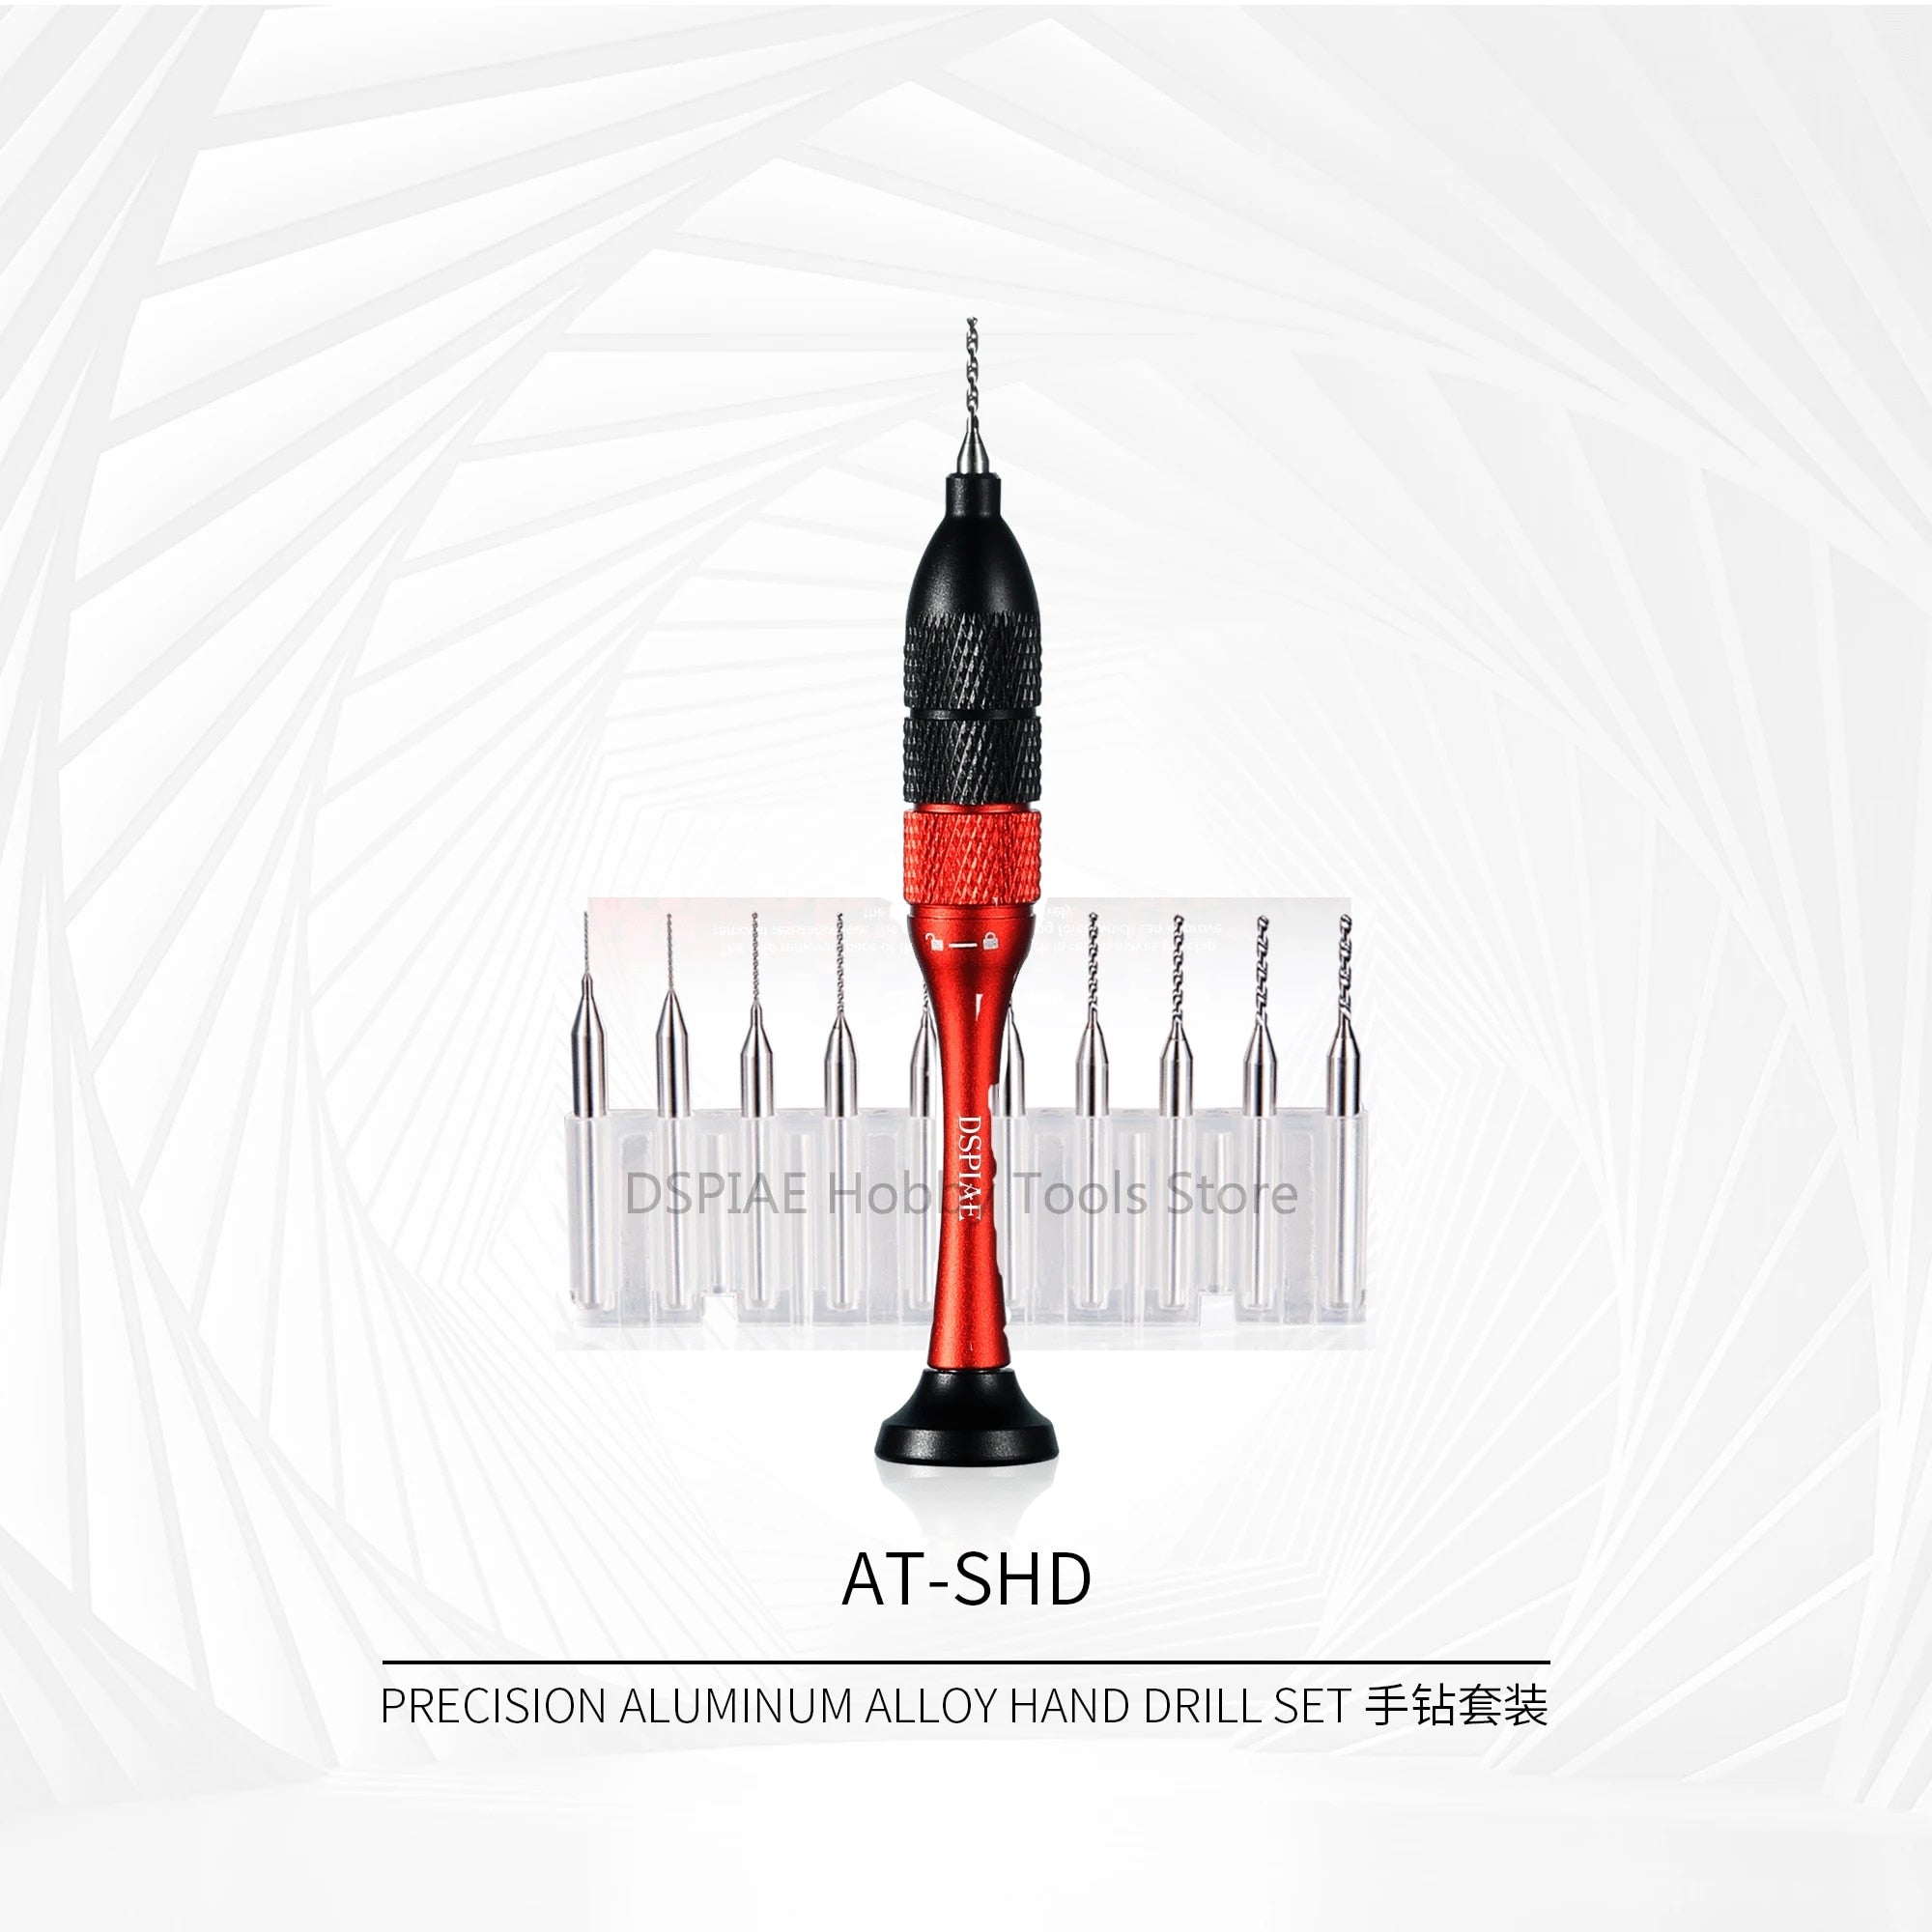 DSPIAE: Precision Aluminum Alloy Hand Drill Set